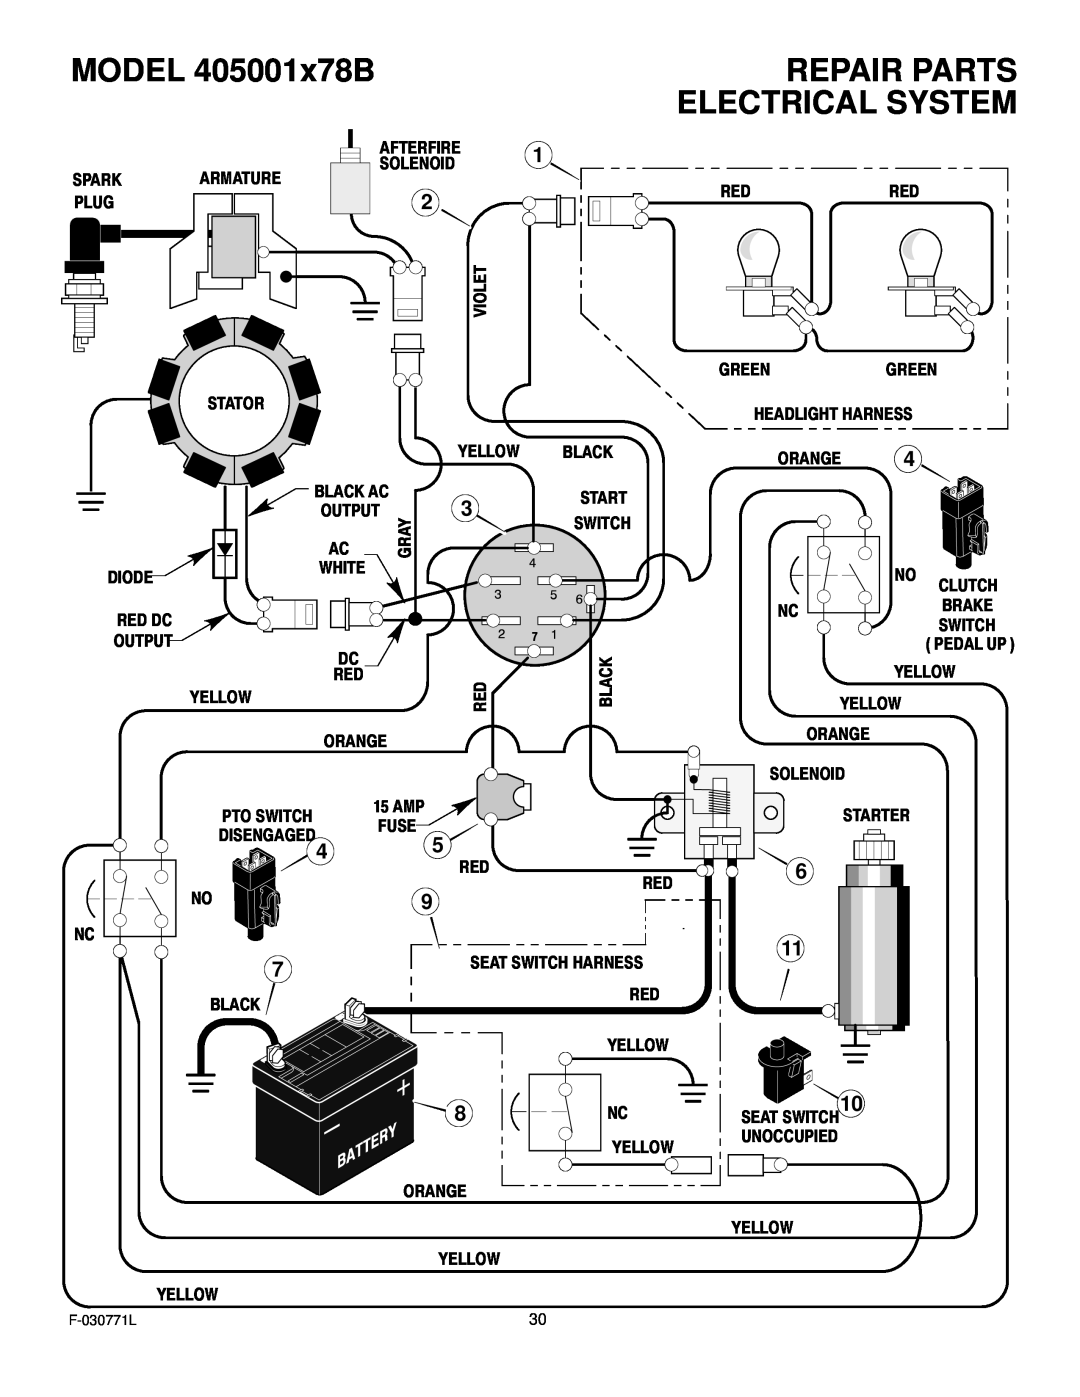 Murray manual Electrical System, MODEL 405001x78B, Repair Parts 